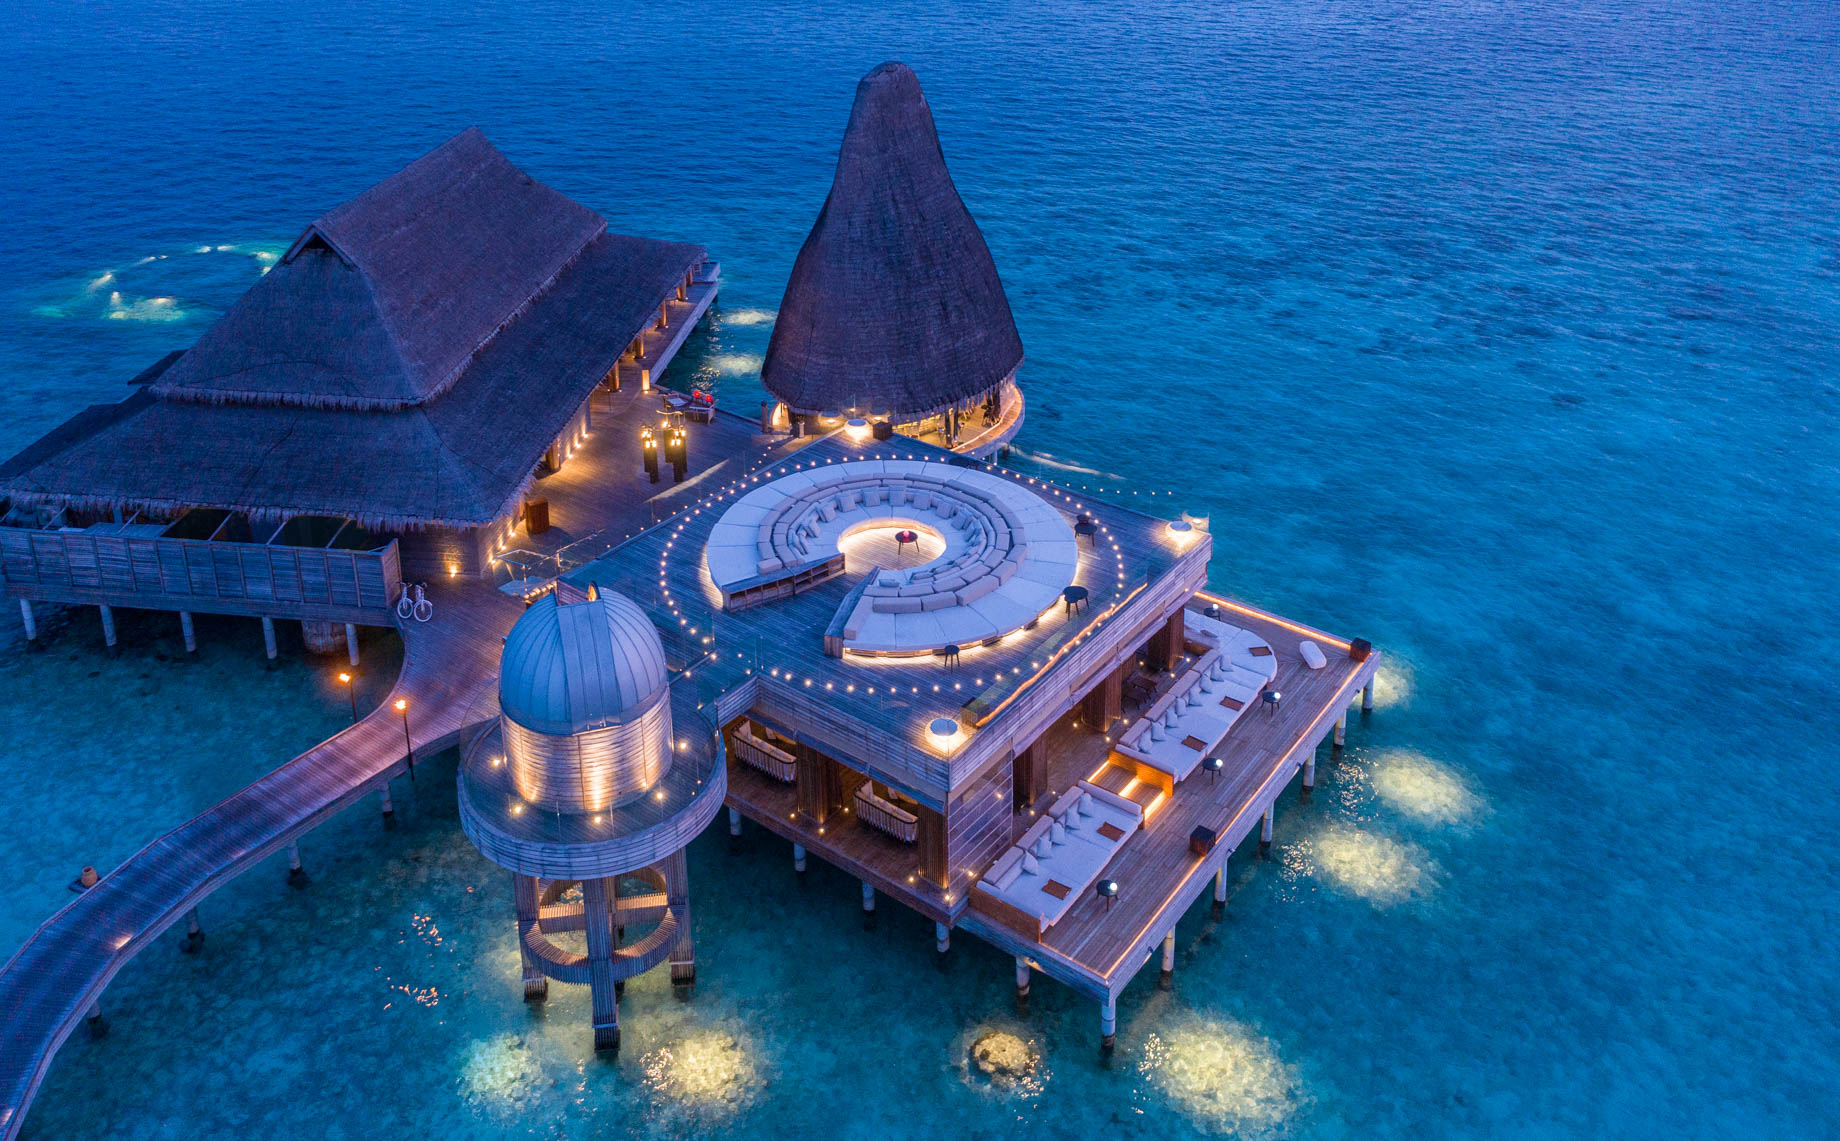 Anantara Kihavah Maldives Villas Resort – Baa Atoll, Maldives – Sky Observatory and Overwater Bar Complex